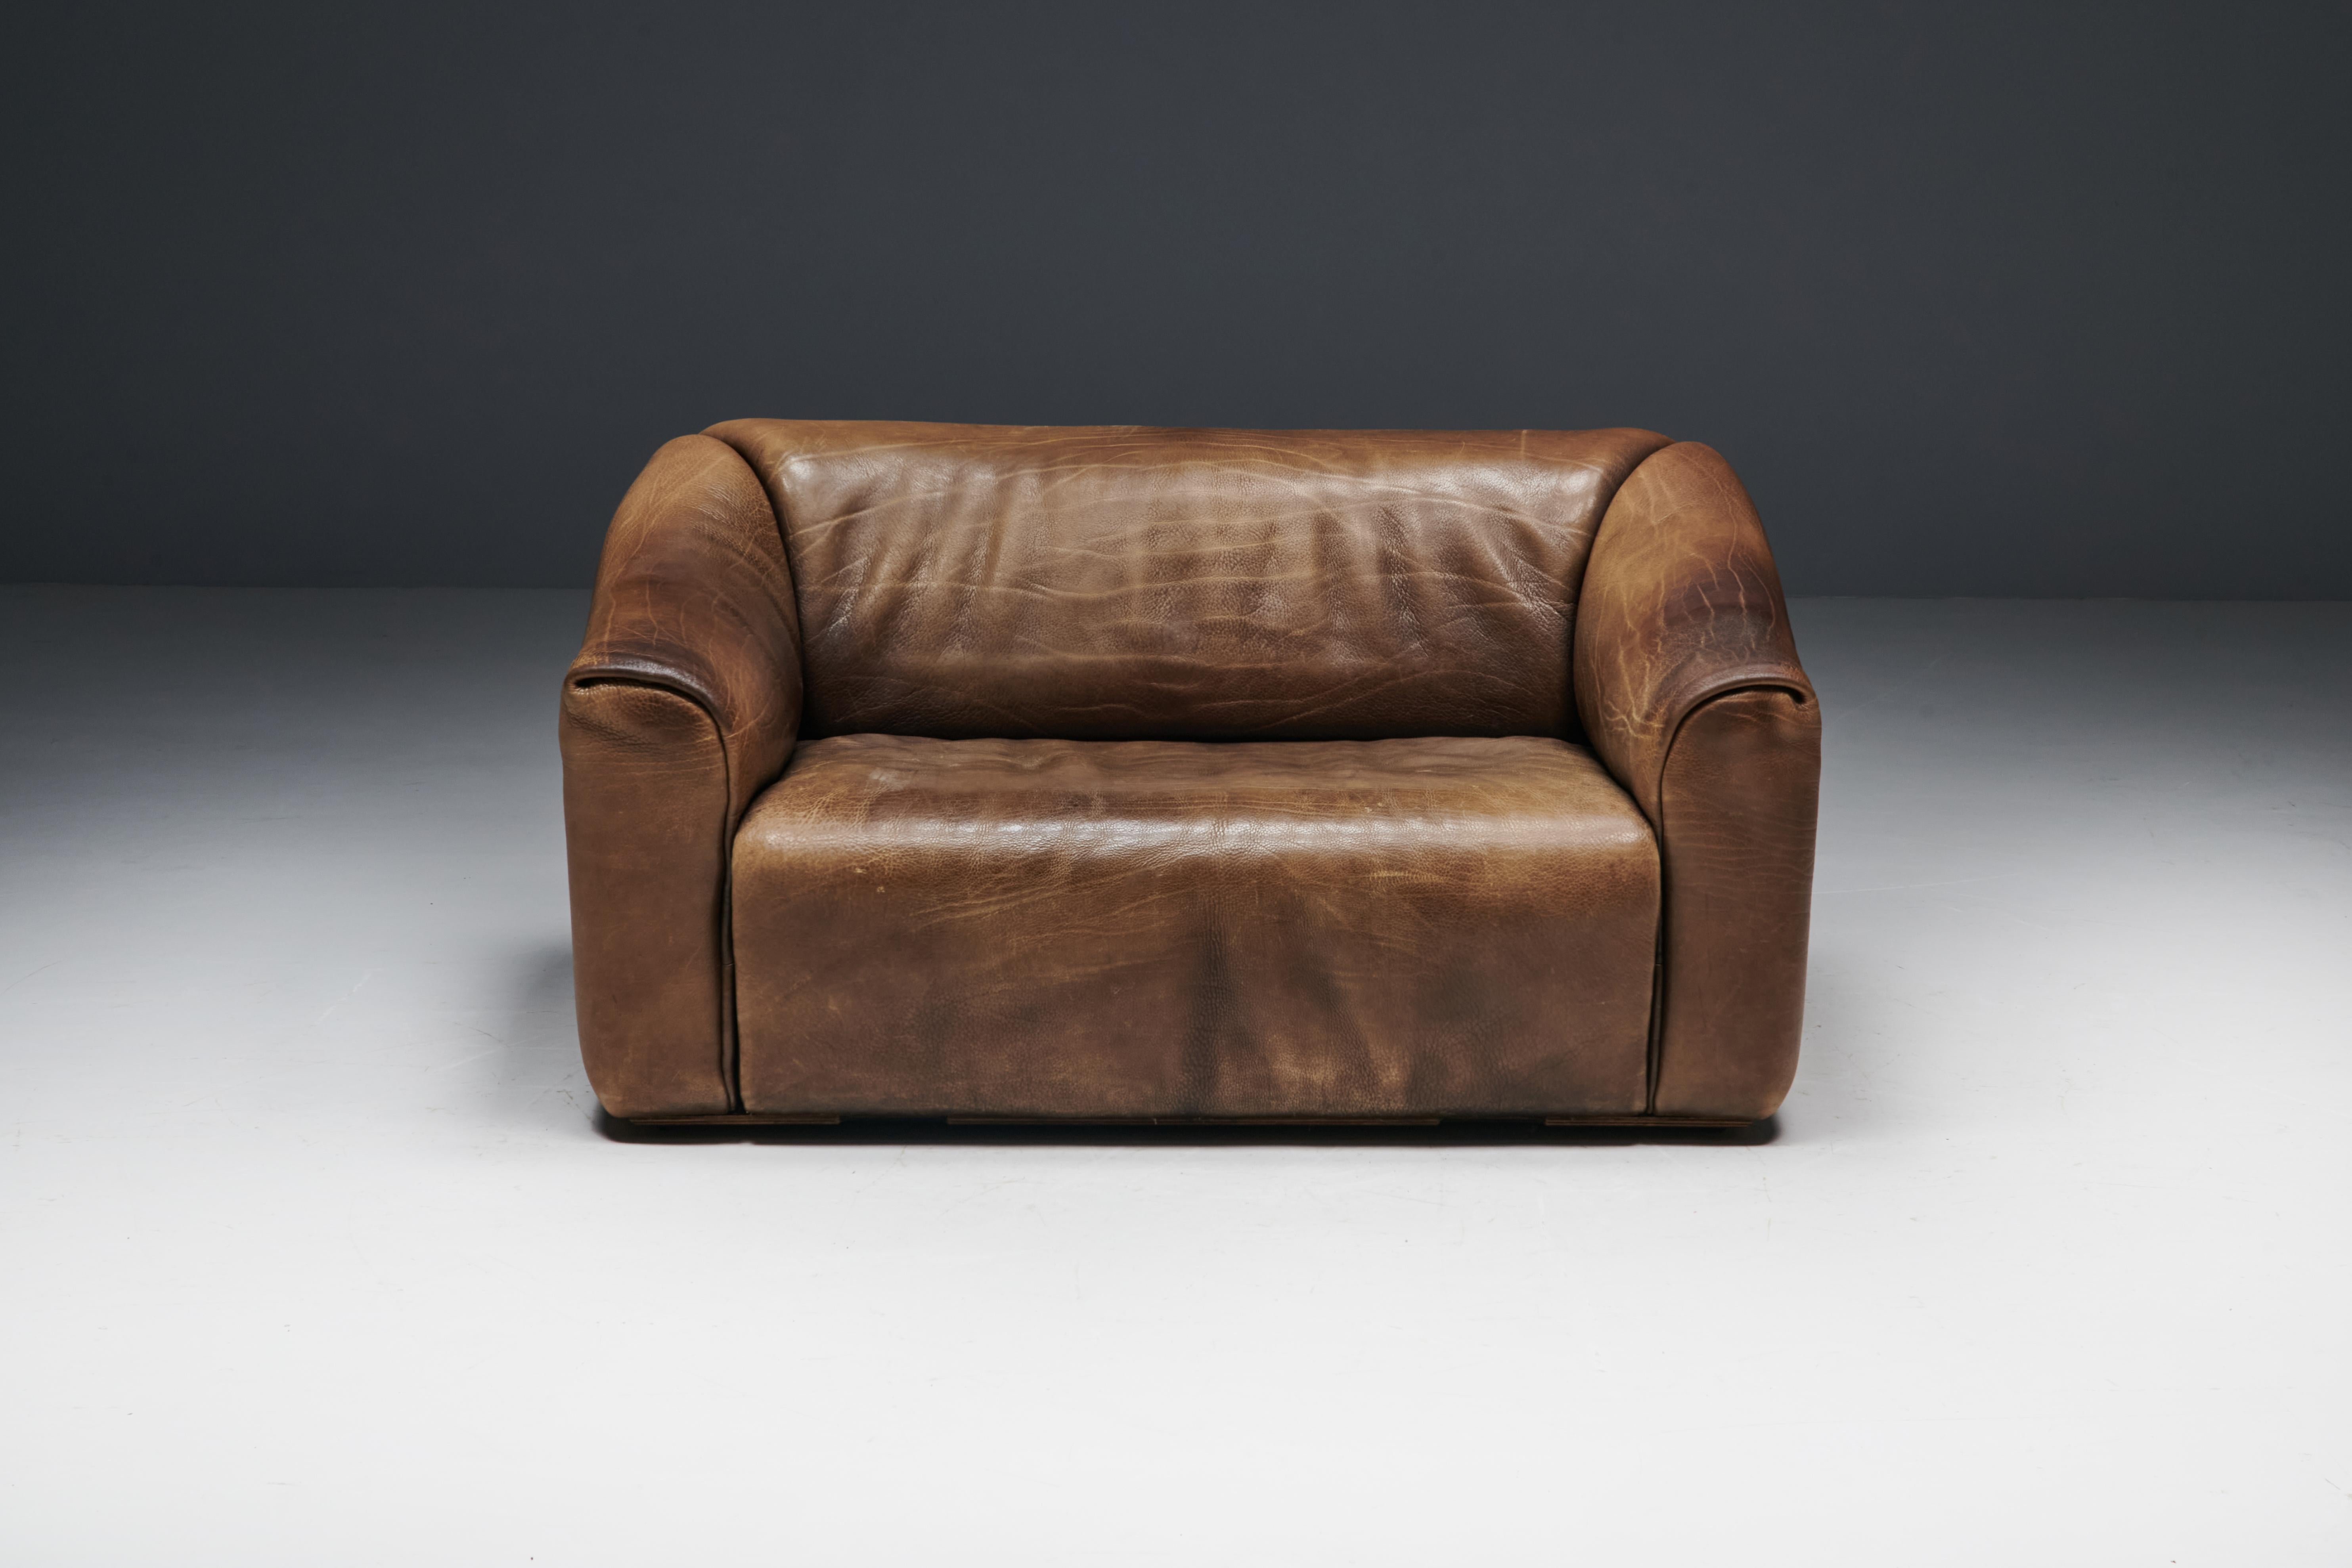 Le canapé deux places DS47, un chef-d'œuvre réalisé par De Sede en Suisse en 1970. Plongez dans le luxe avec son cuir de buffle marron de haute qualité, mettant en valeur l'artisanat réputé et les sièges confortables pour lesquels De Sede est